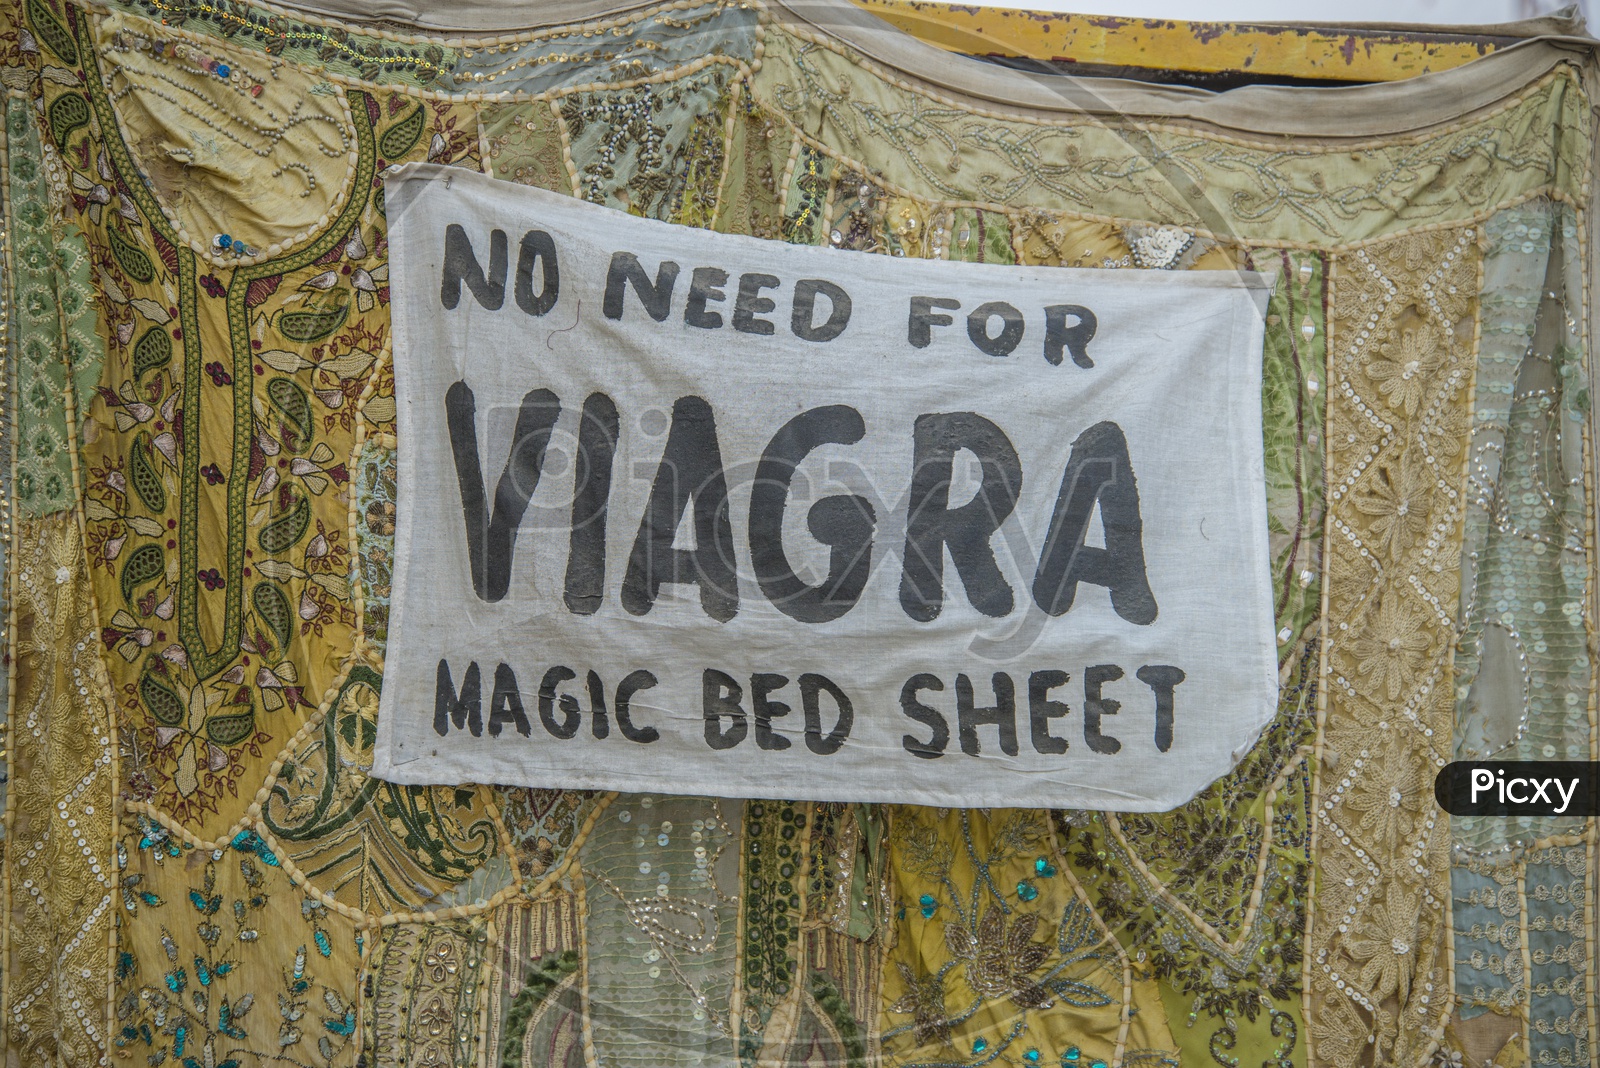 Magic Bed Sheet in Jaisalmer